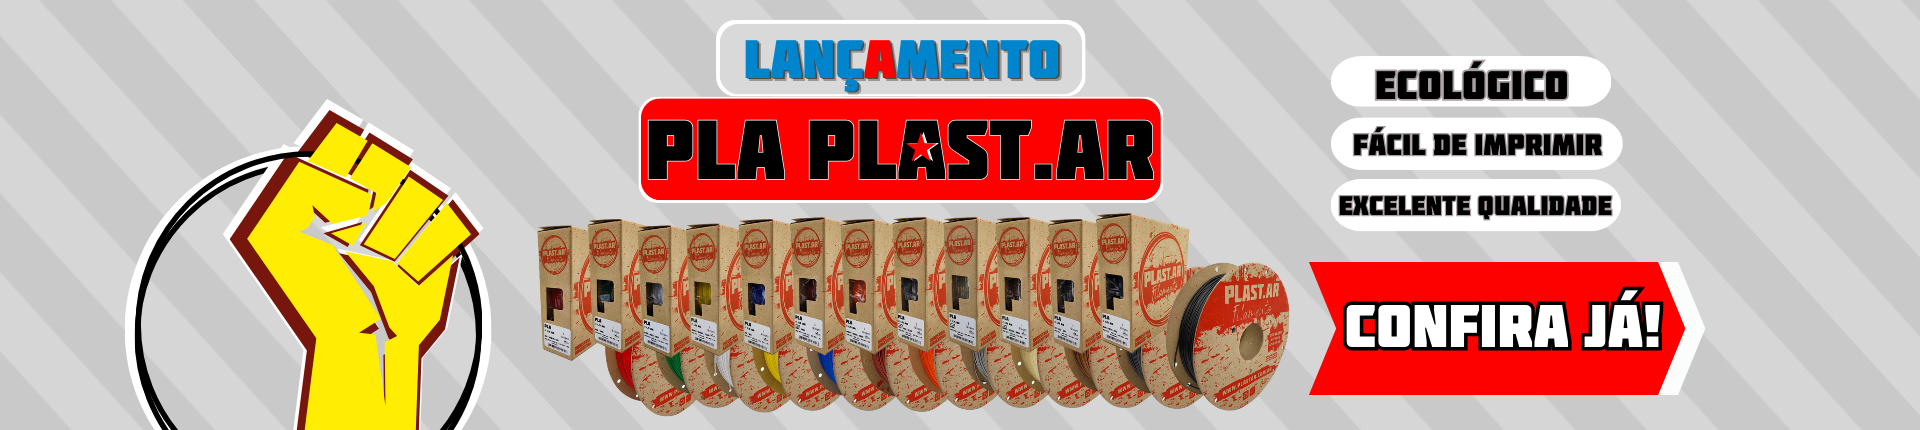 Lançamento PLA Plast.Ar